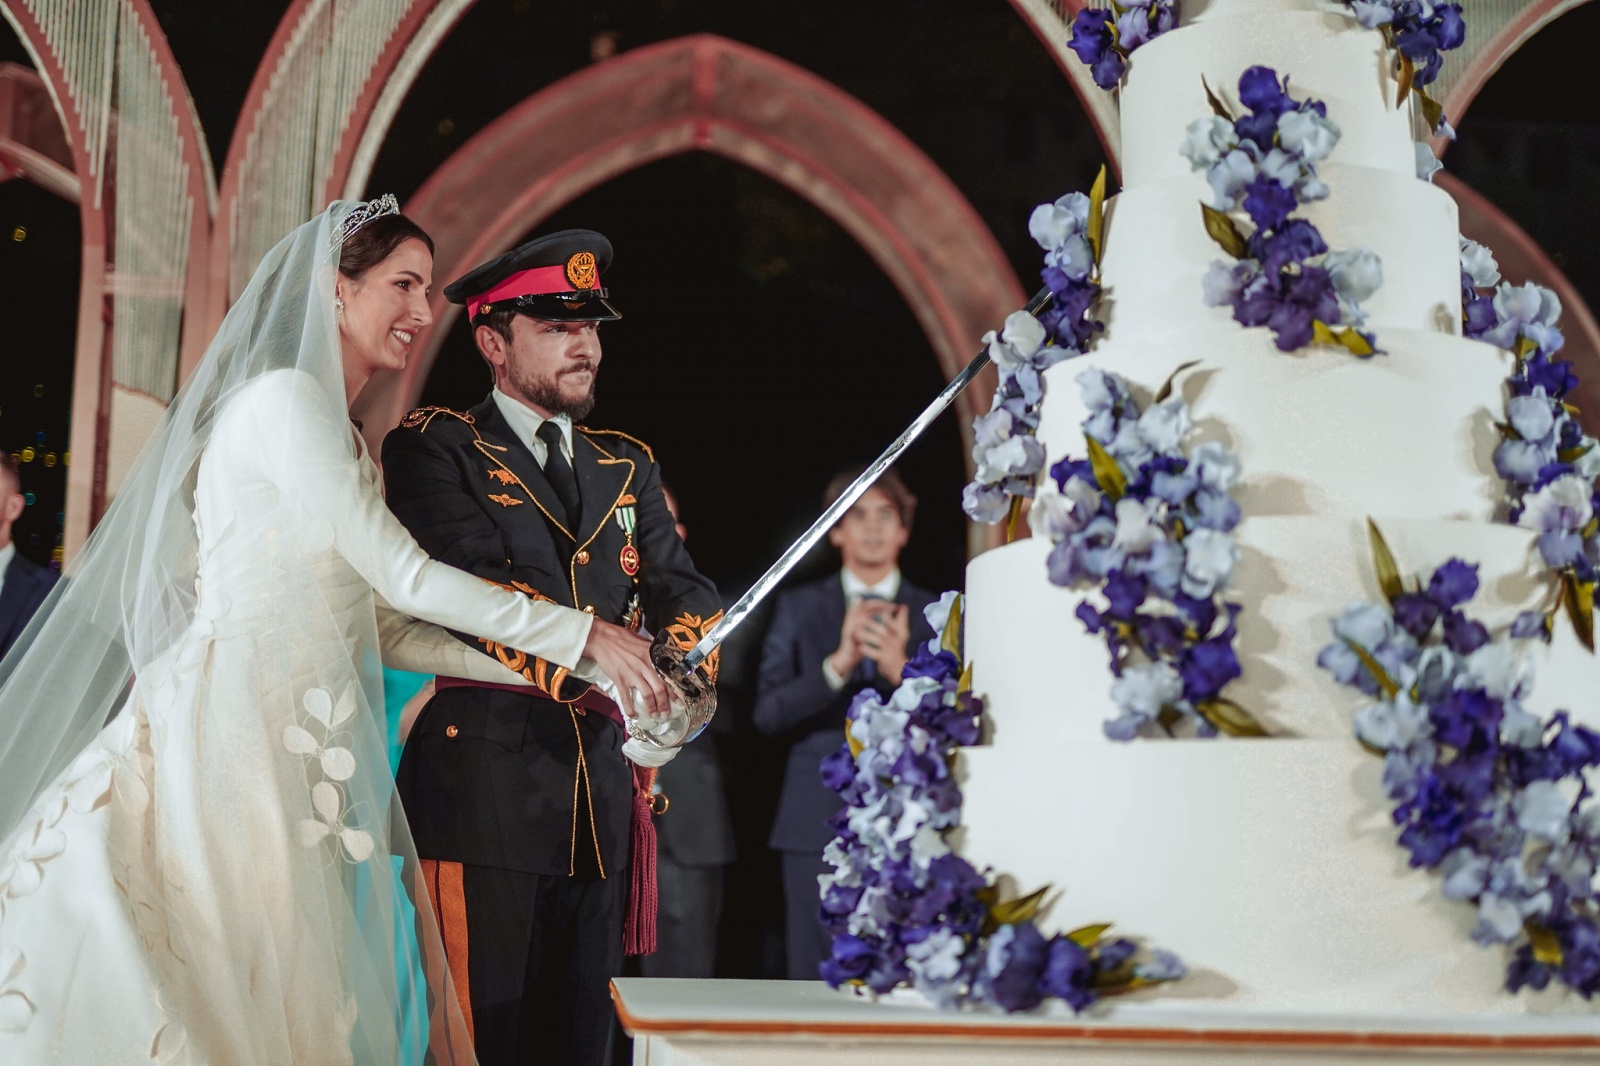 O álbum dos melhores momentos do casamento do príncipe Hussein da Jordânia e Rajwa Al Saif
Foto Royal Hashemite Court